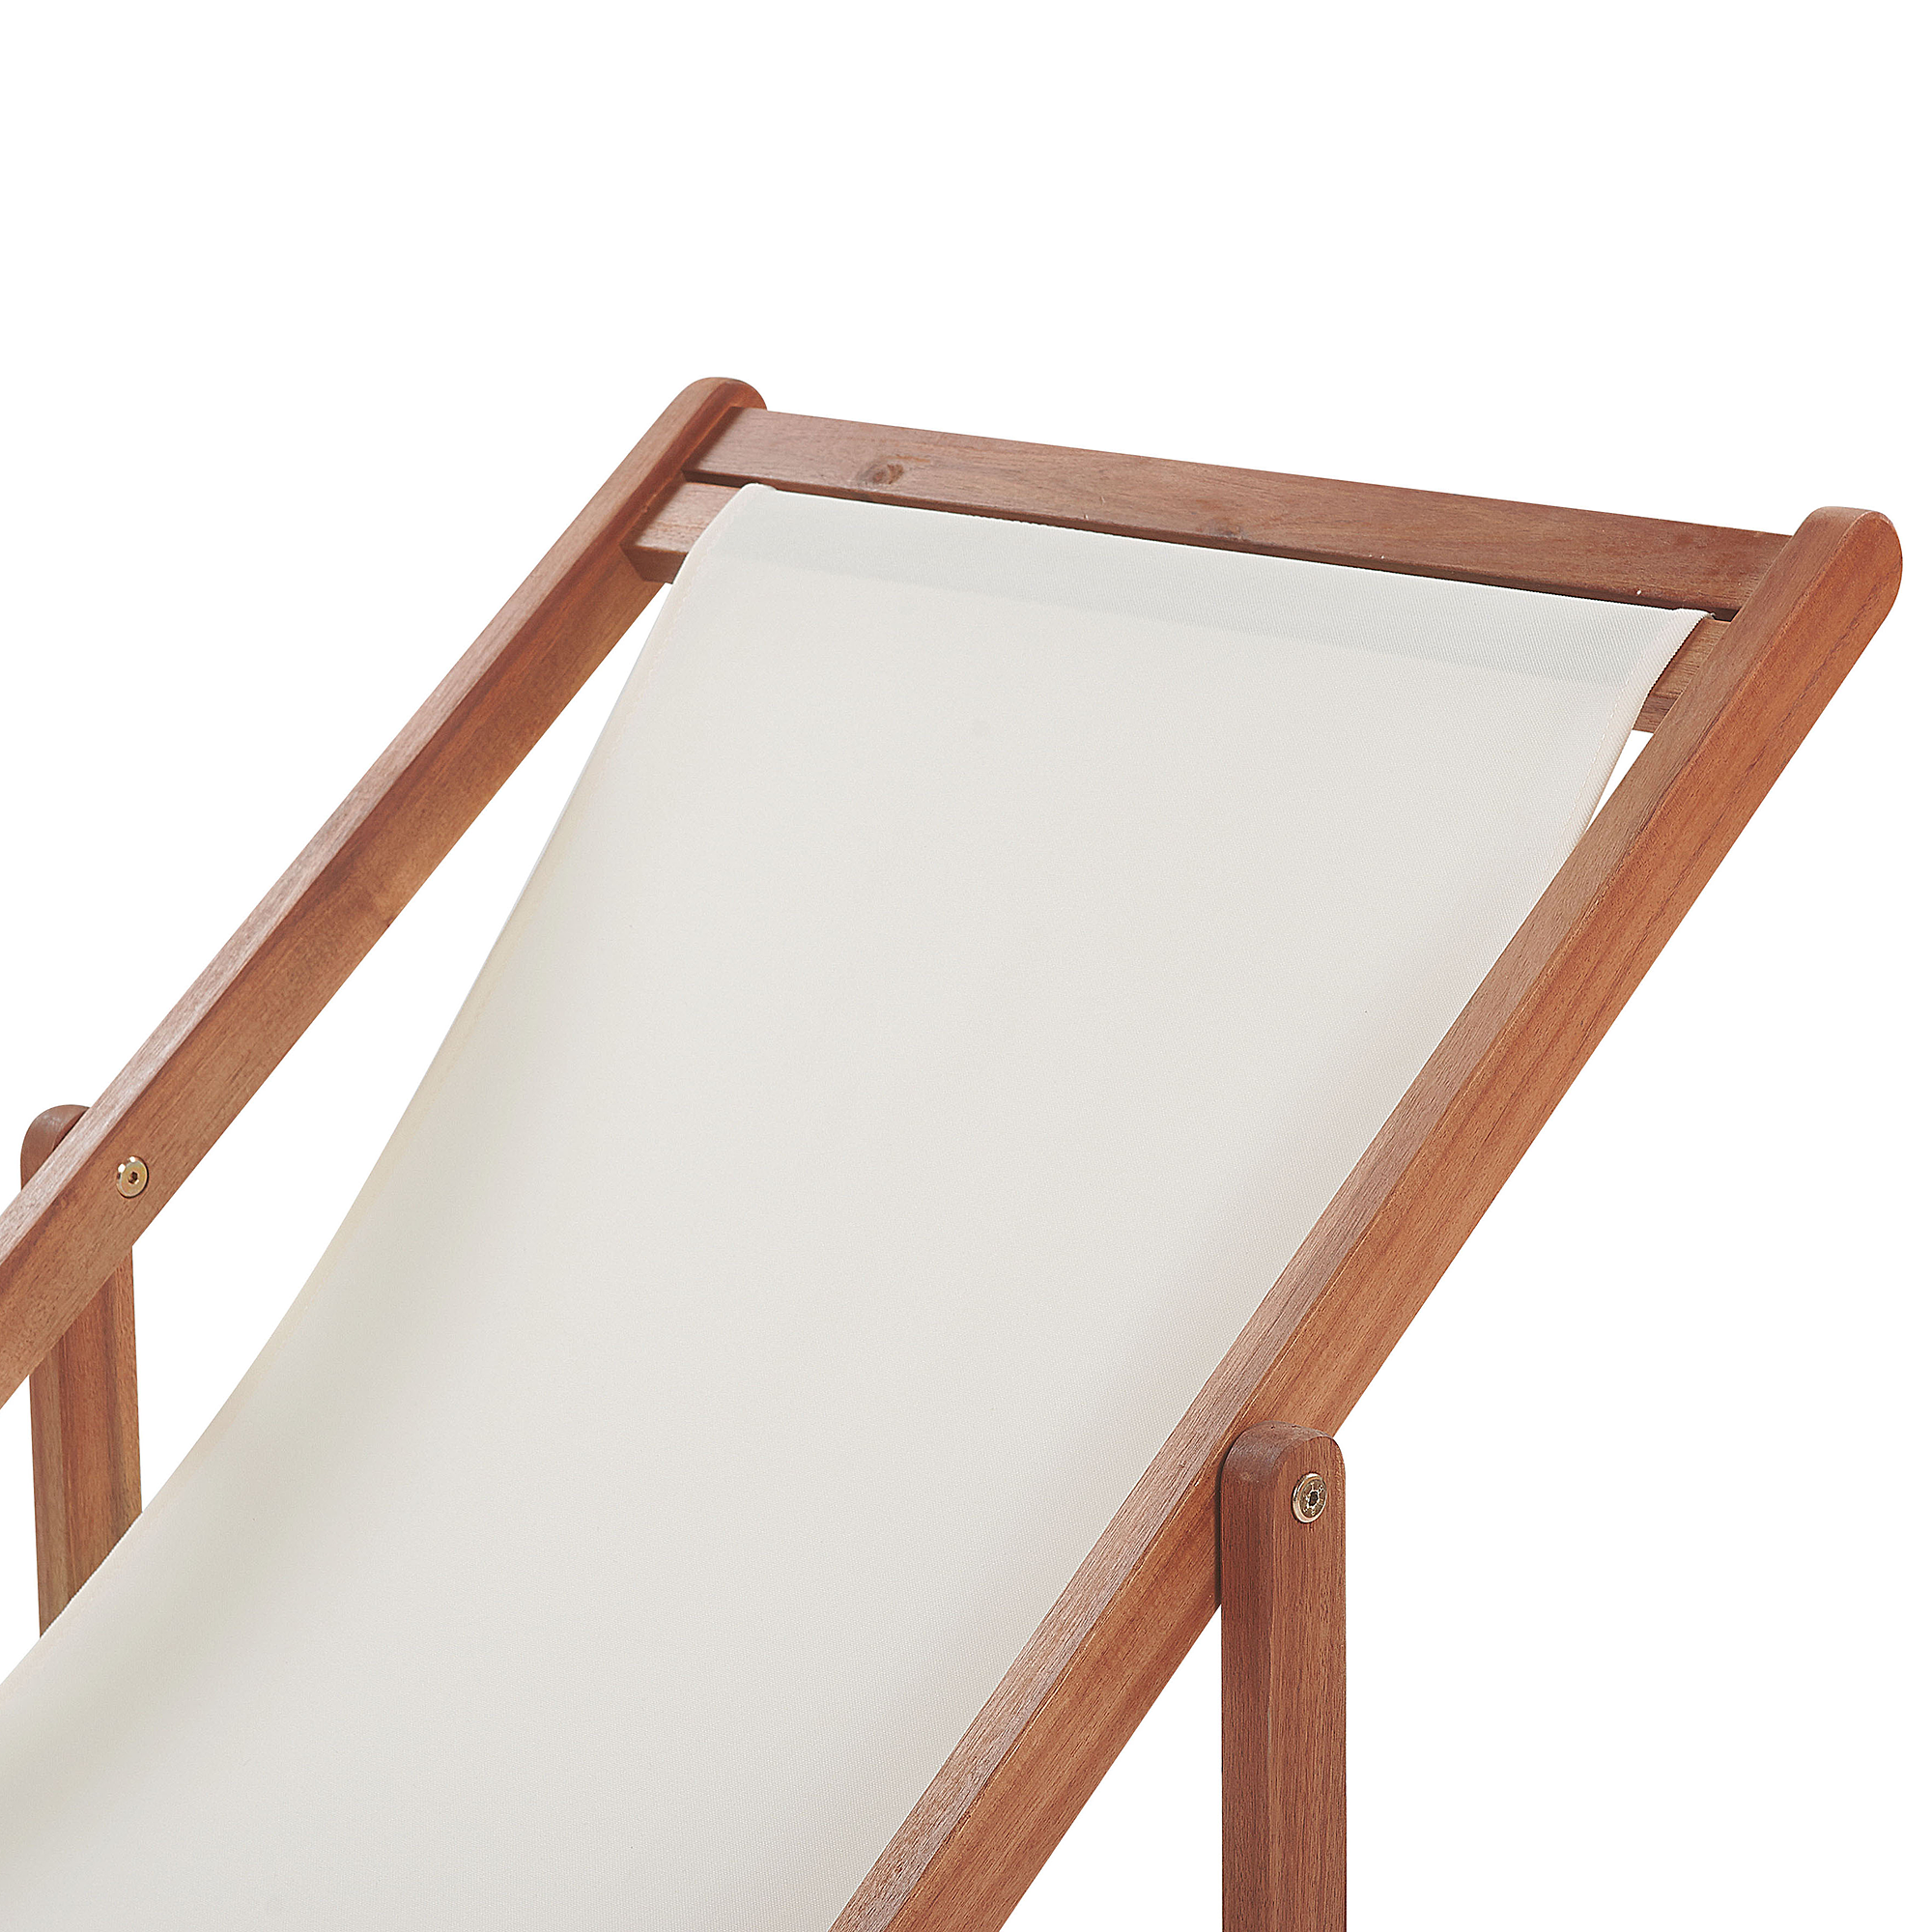 Beliani ANZIO  - Strandstoel set van 2 - Geometrisch/Groen - Polyester